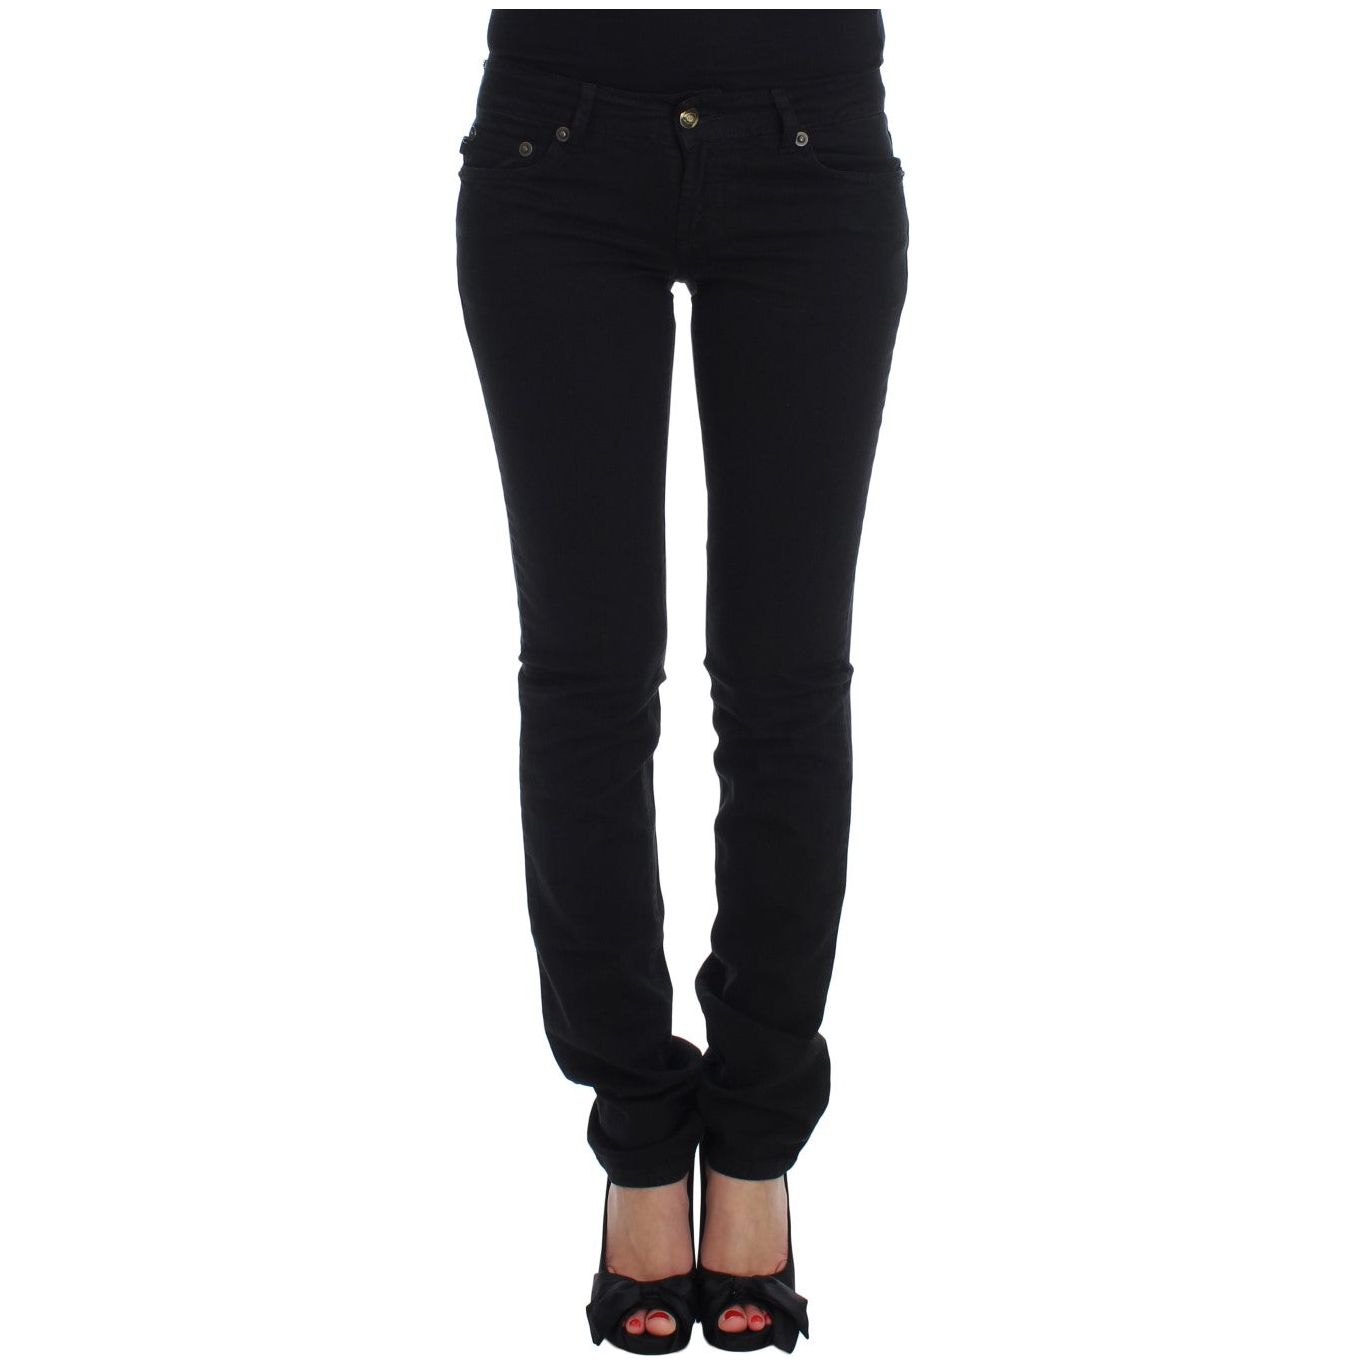 Cavalli Chic Slim Skinny Black Jeans black-cotton-stretch-slim-skinny-fit-jeans Jeans & Pants 60937-black-cotton-stretch-slim-skinny-fit-jeans.jpg